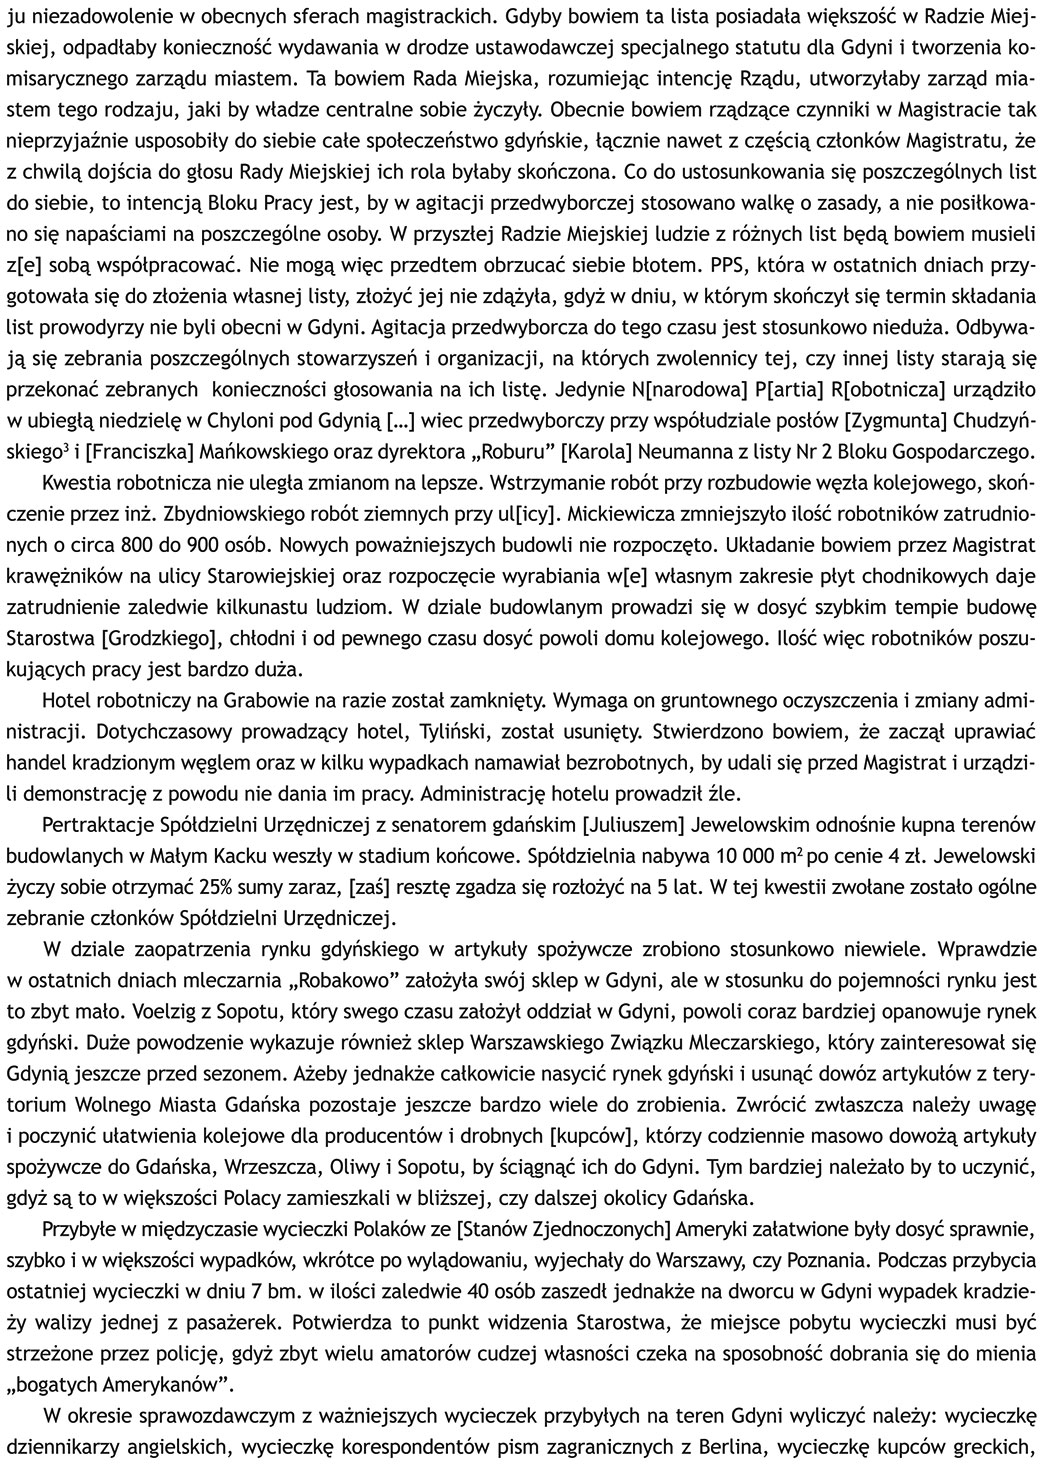 1929 lipiec 11, Gdynia - Sprawozdanie sytuacyjne Nr 144/Pf. p.o. Starosty Grodzkiego w Gdyni Władysława za czas od 27 czerwca do 10 lipca 1929 roku, oryg. mps., APG O/G, sygn. 682/2298, s. 16-27